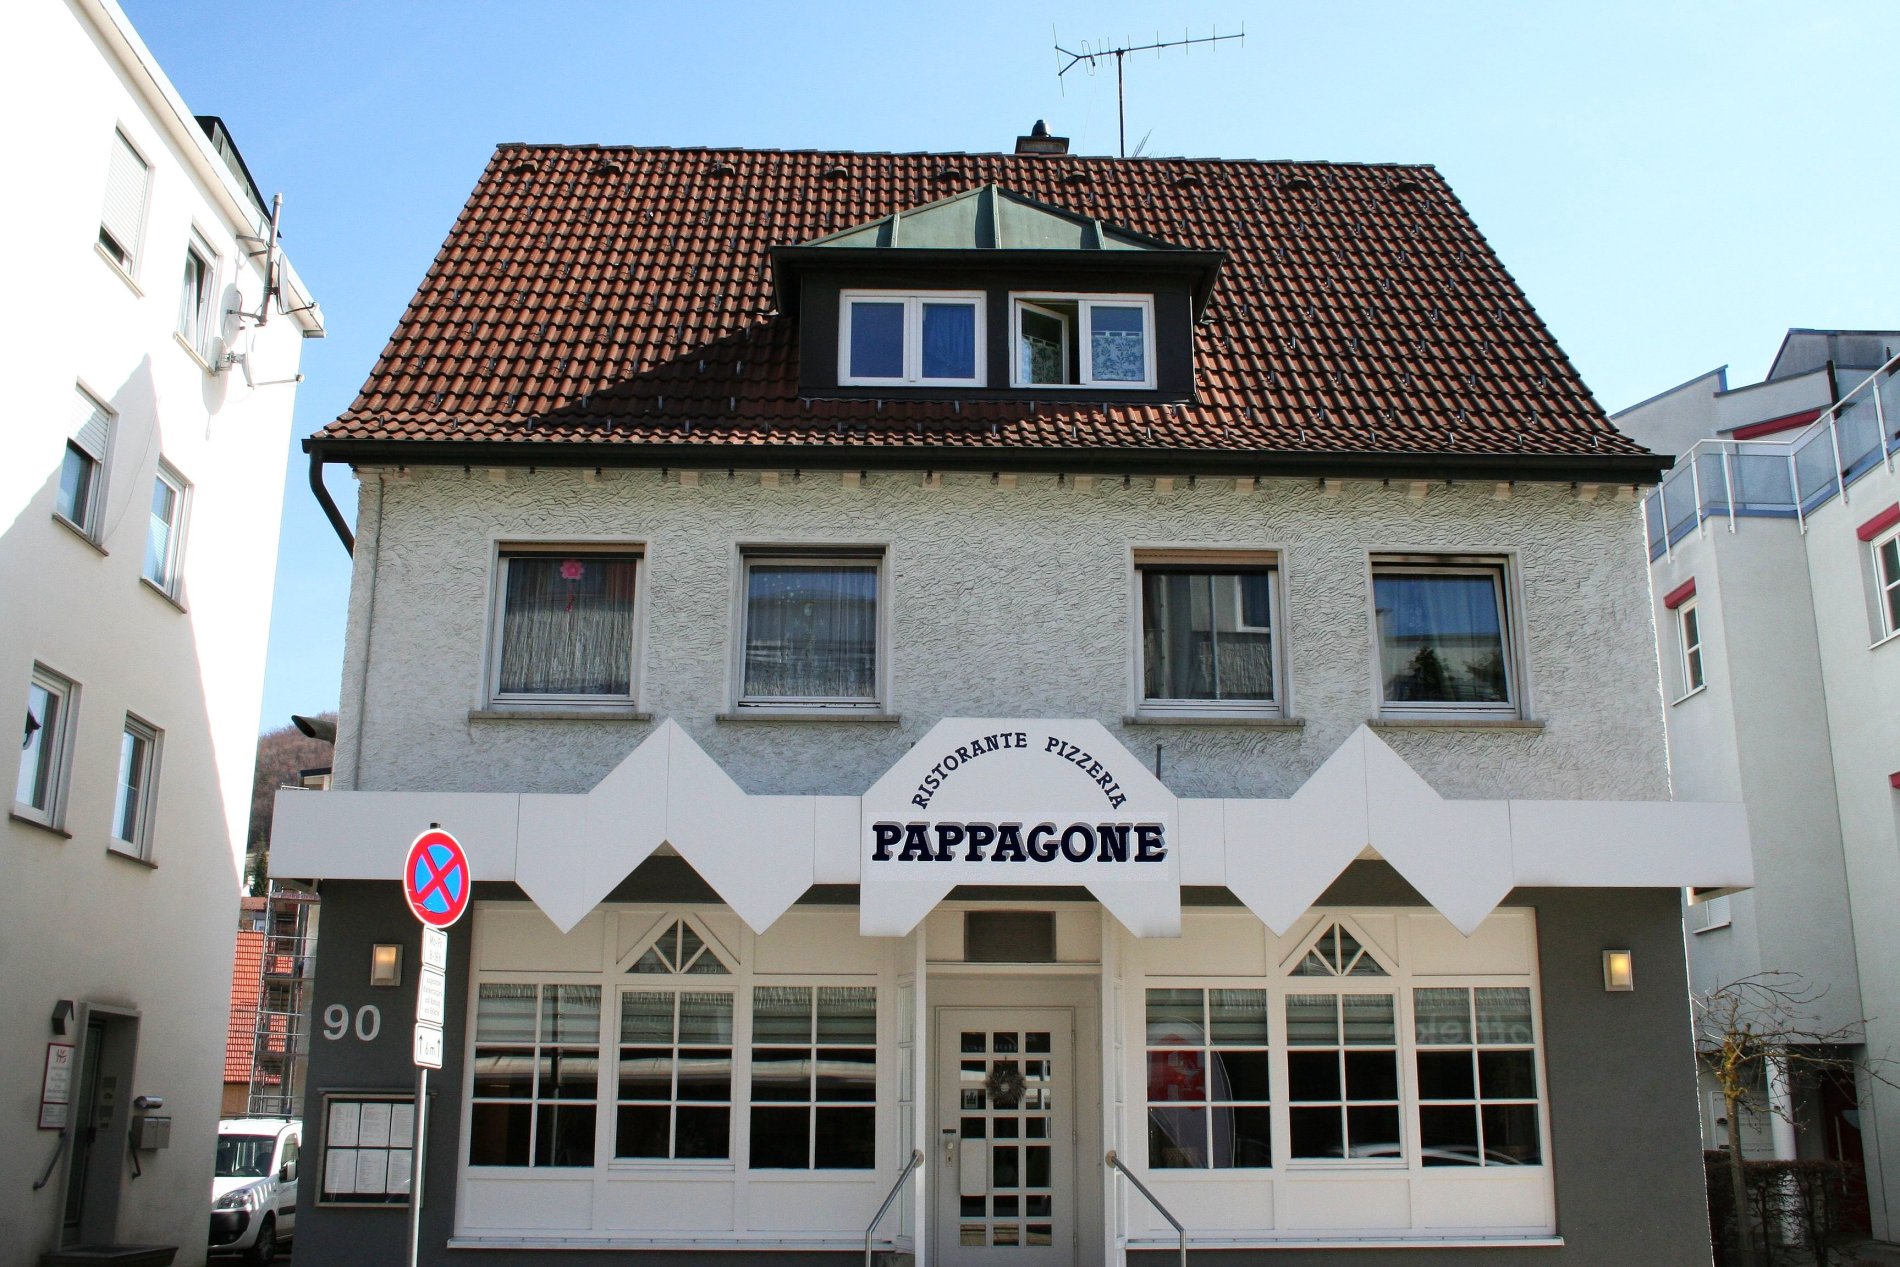 Restaurants in Albstadt: Pizzeria Restaurant Pappagone in Albstadt-Truchtelfingen